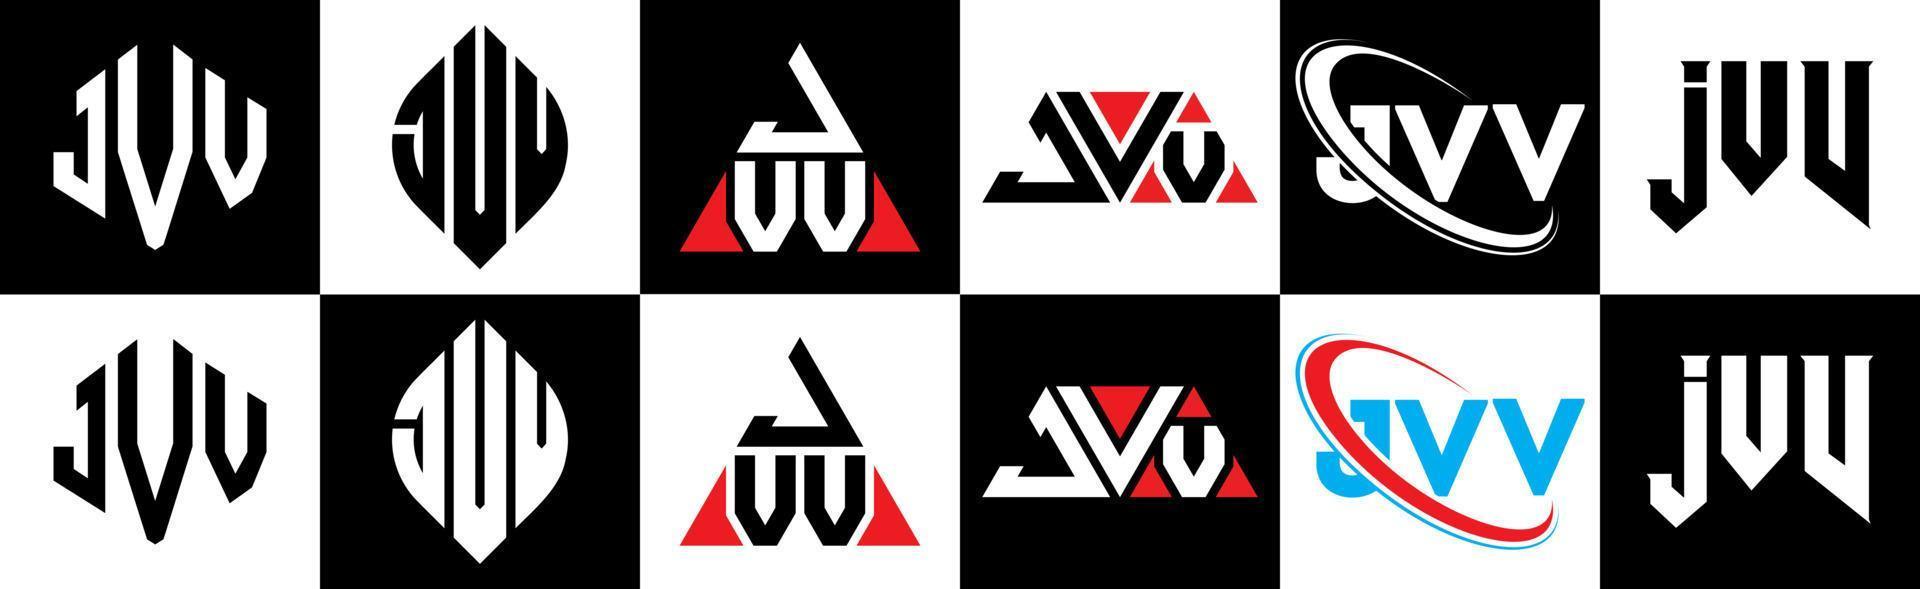 design de logotipo de carta jvv em seis estilos. polígono jvv, círculo, triângulo, hexágono, estilo plano e simples com logotipo de carta de variação de cor preto e branco definido em uma prancheta. jvv logotipo minimalista e clássico vetor